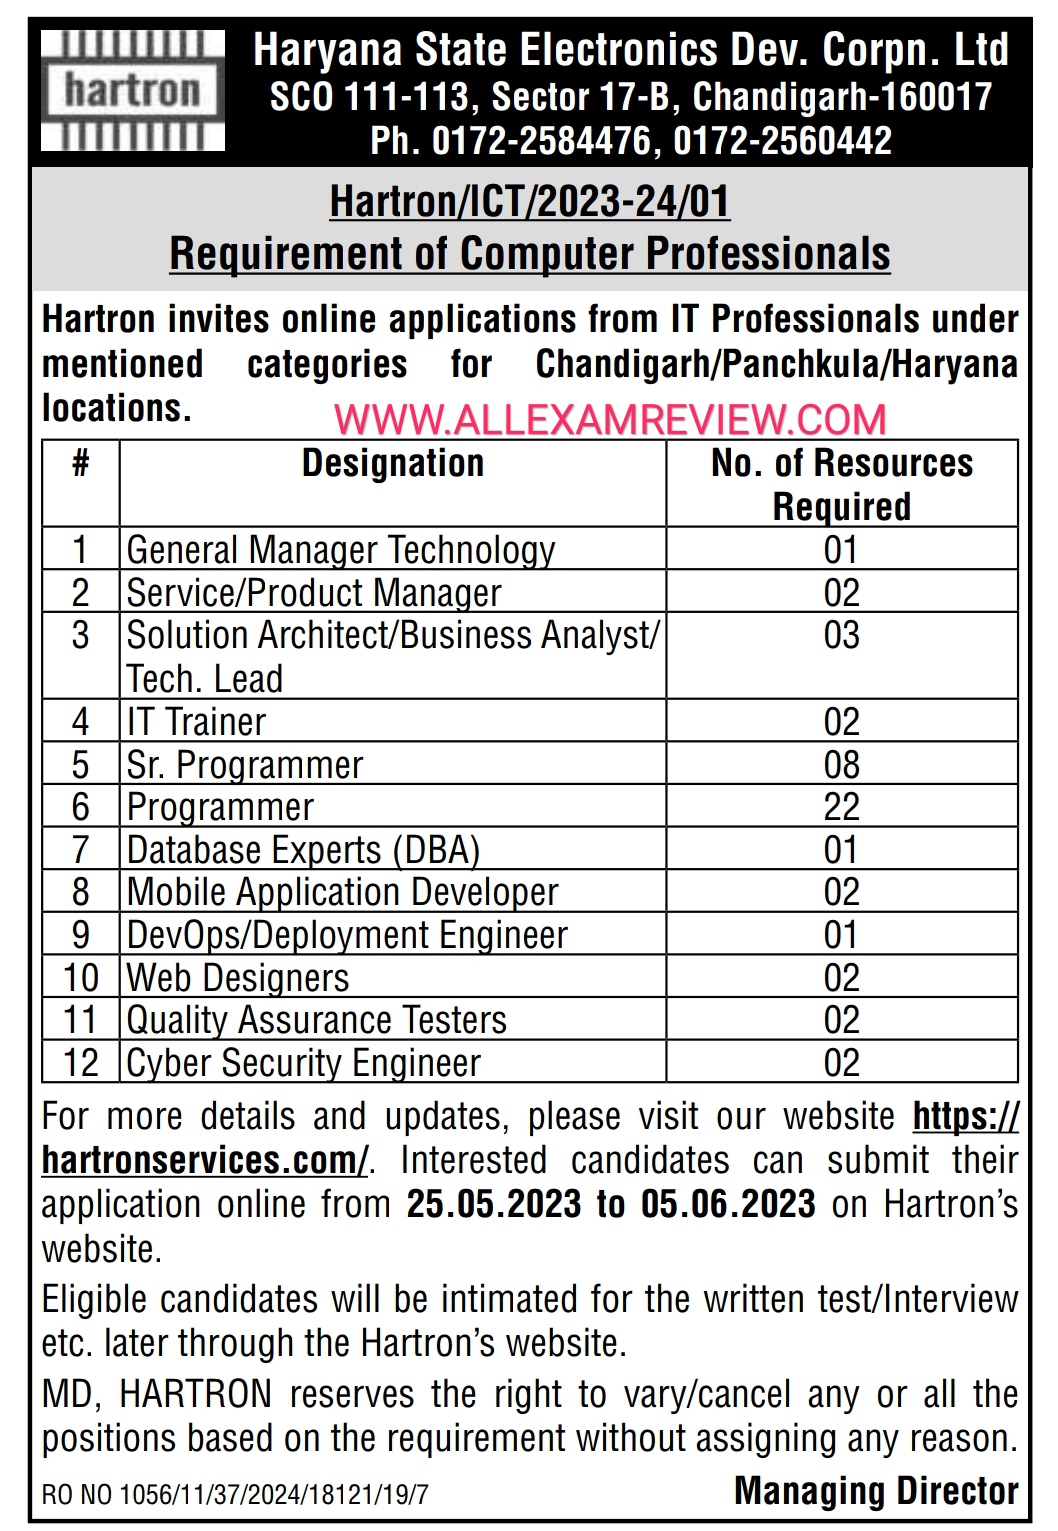 Hartron Recruitment Computer Professionals 2023